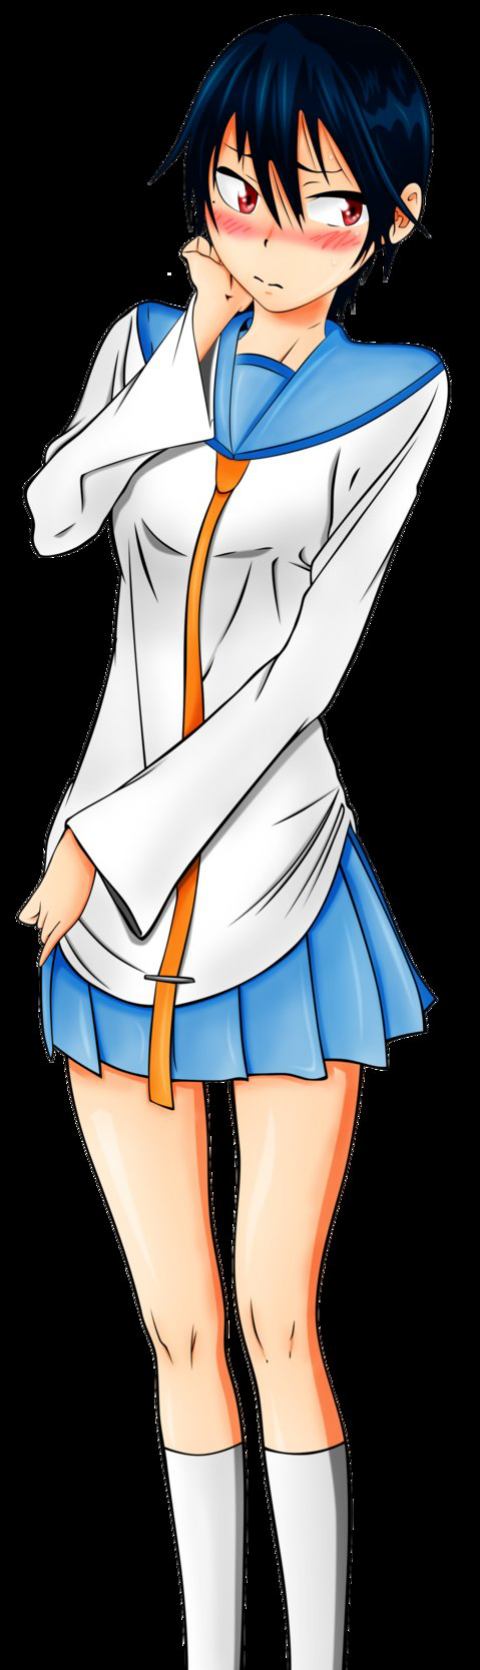 Nisekoi - Nisekoi Tsugumi Girl Uniform , HD Wallpaper & Backgrounds